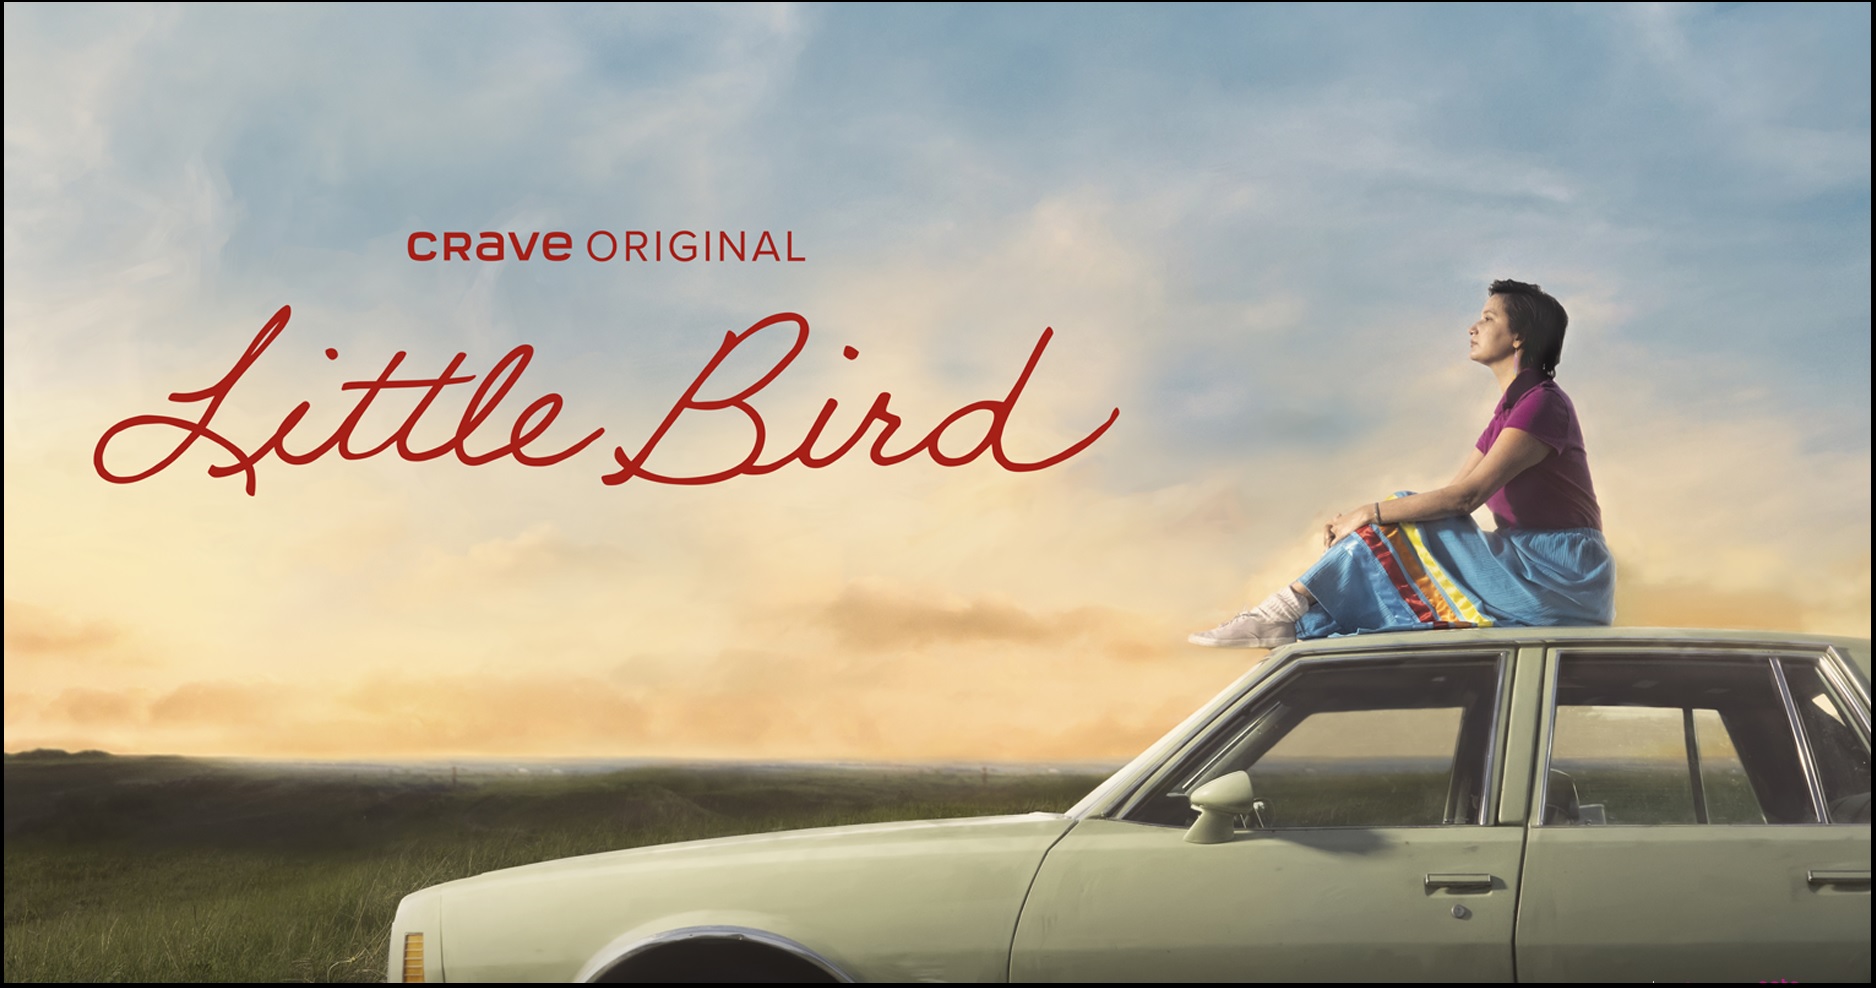 Little Bird Season 1 Episode 6 Release Date